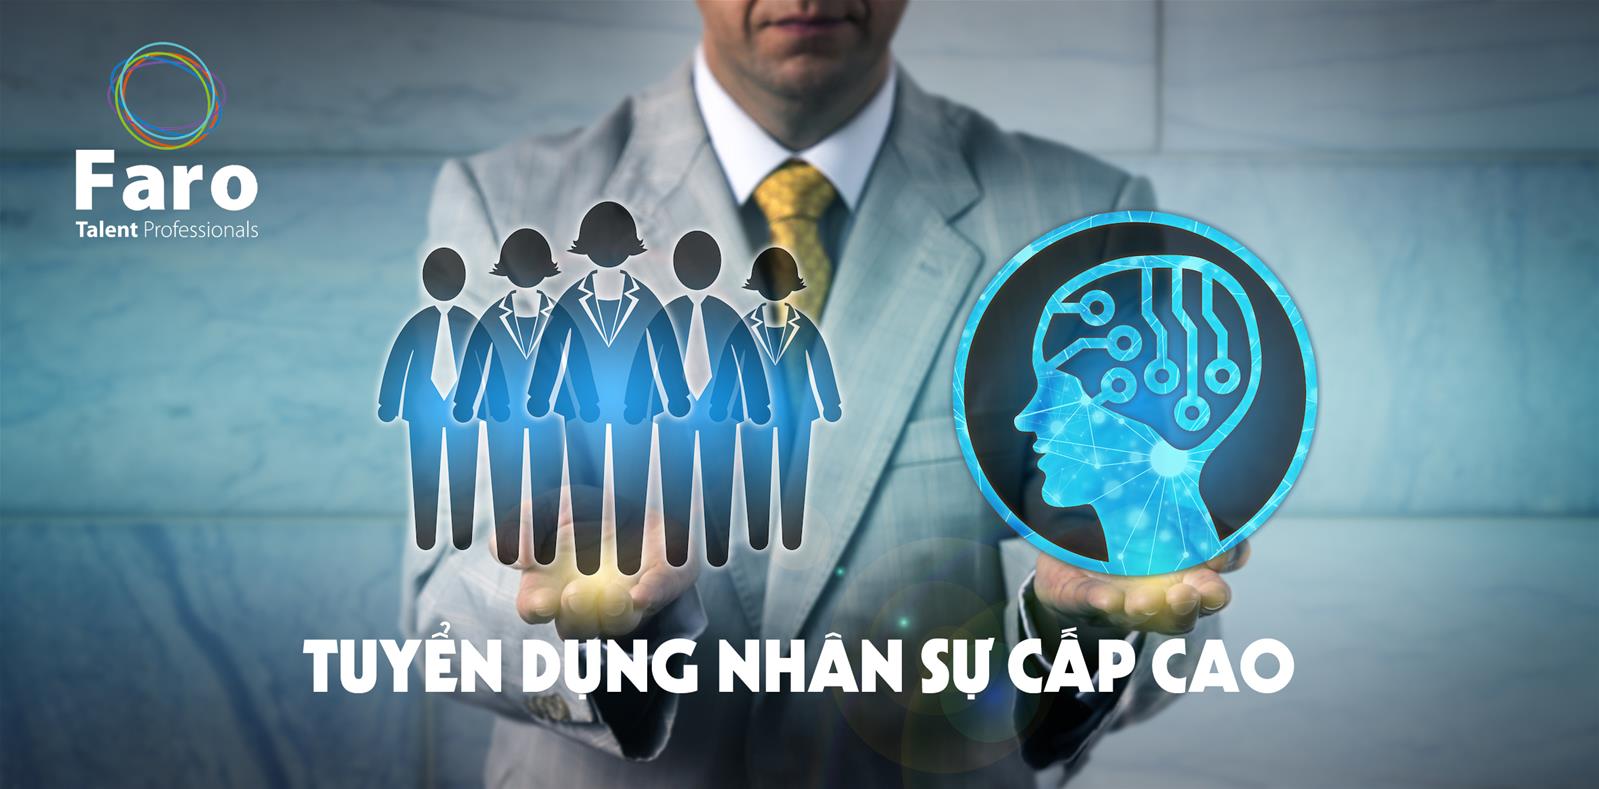 Tuyển dụng nhân sự cấp cao là gì? Bạn có biết về quy trình tuyển dụng nhân sự cấp cao tại Việt Nam hiện nay?